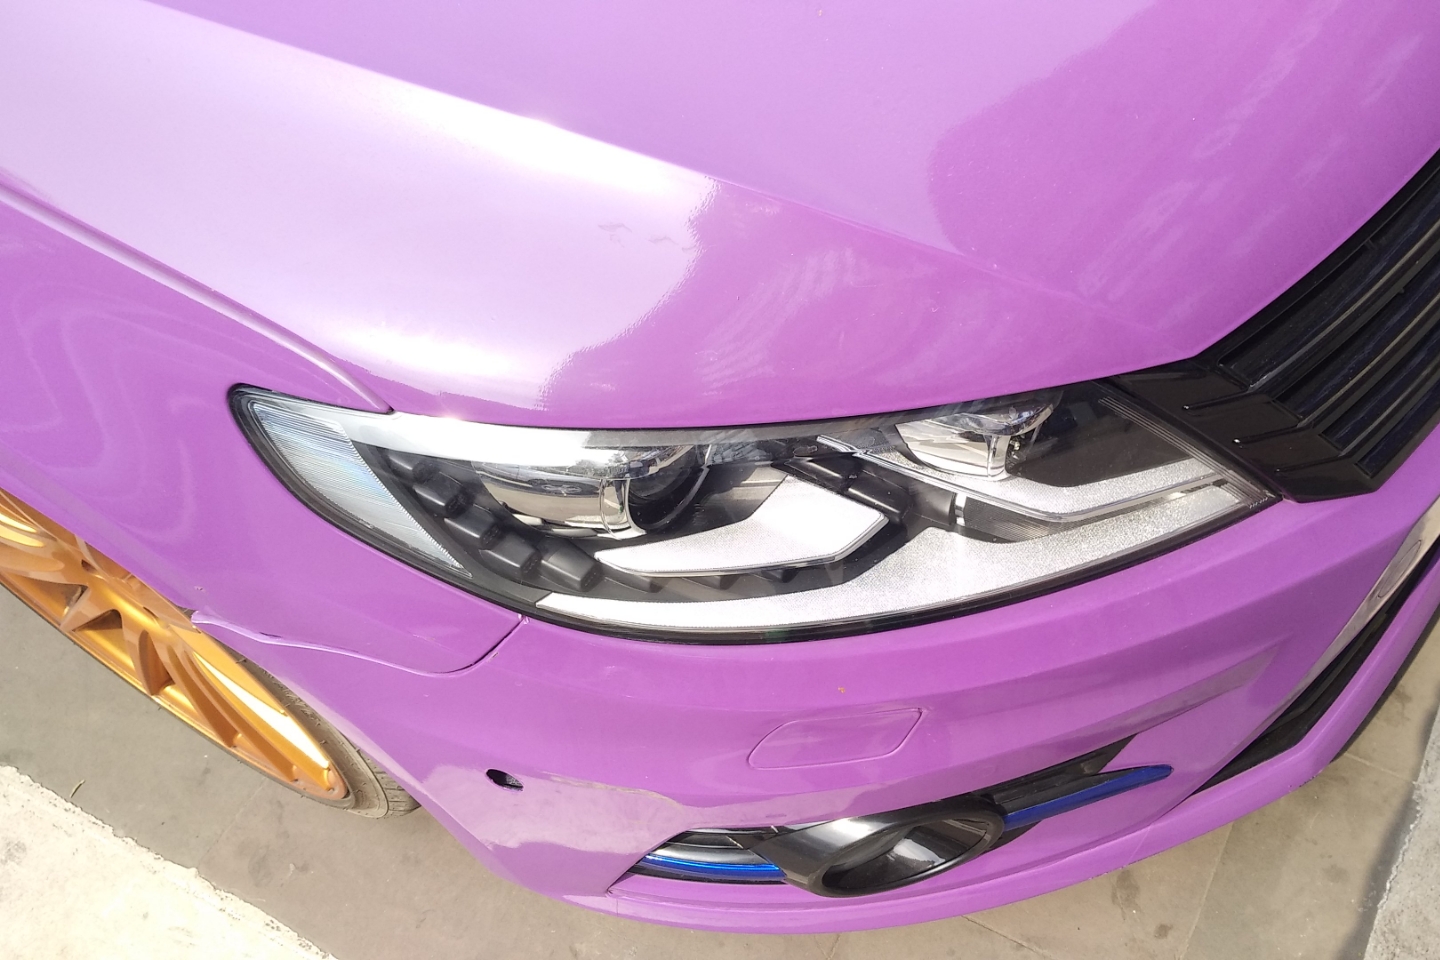 大众cc紫色汽车图片图片